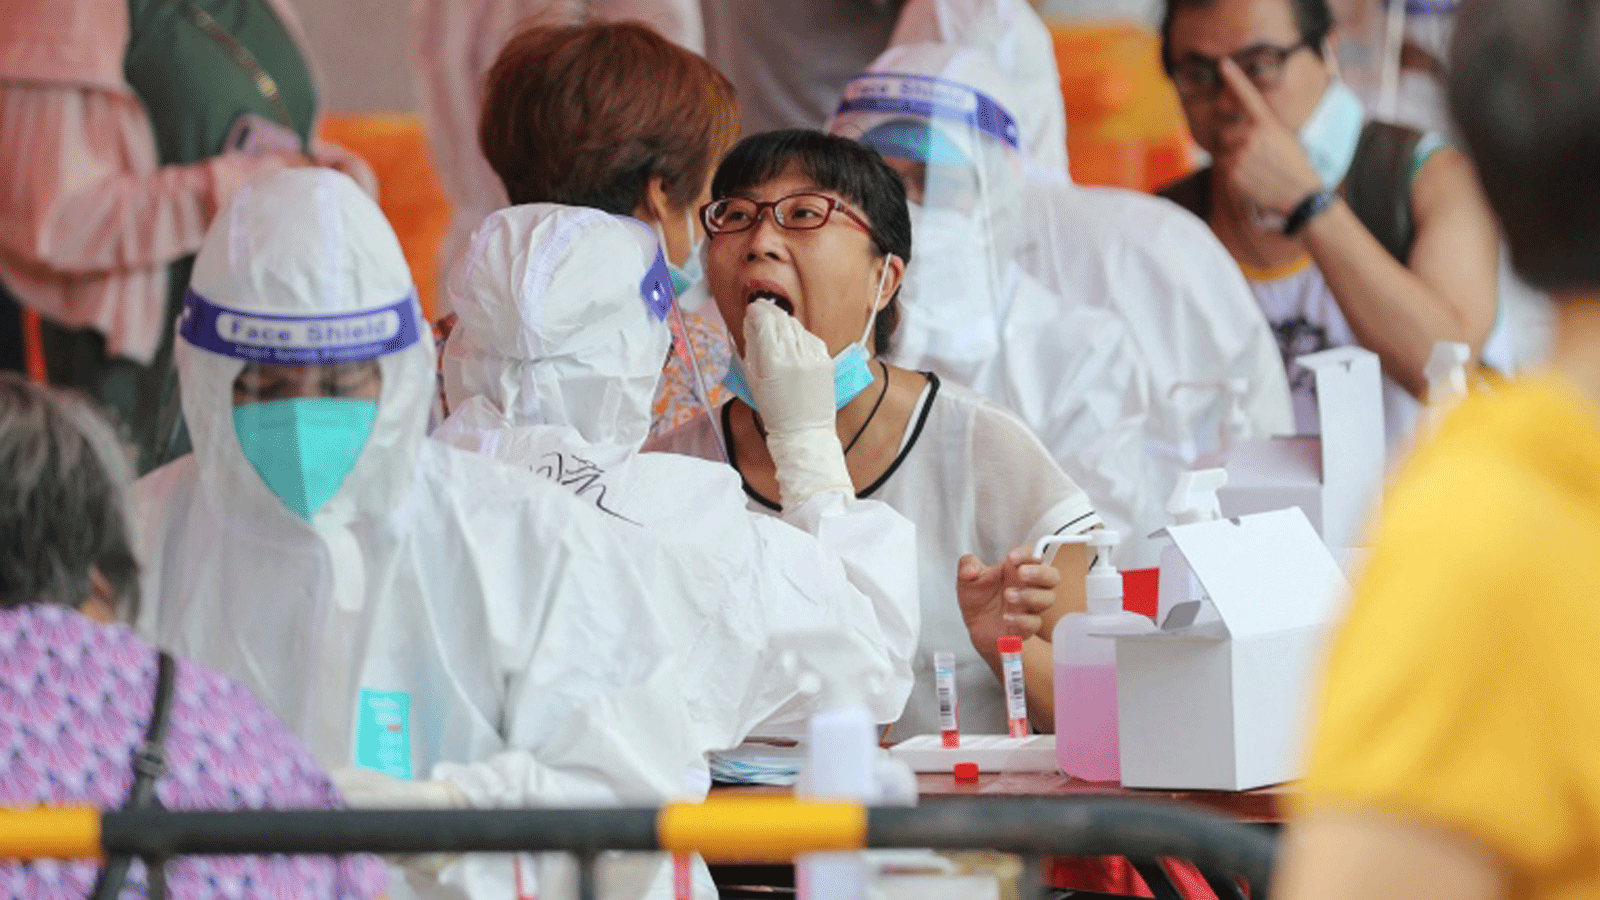 مواطنة تخضع لاختبار الحمض النووي لفيروس كورونا COVID-19 في شيامن بمقاطعة فوجيان بشرق الصين في 14أيلول/ سبتمبر 2021